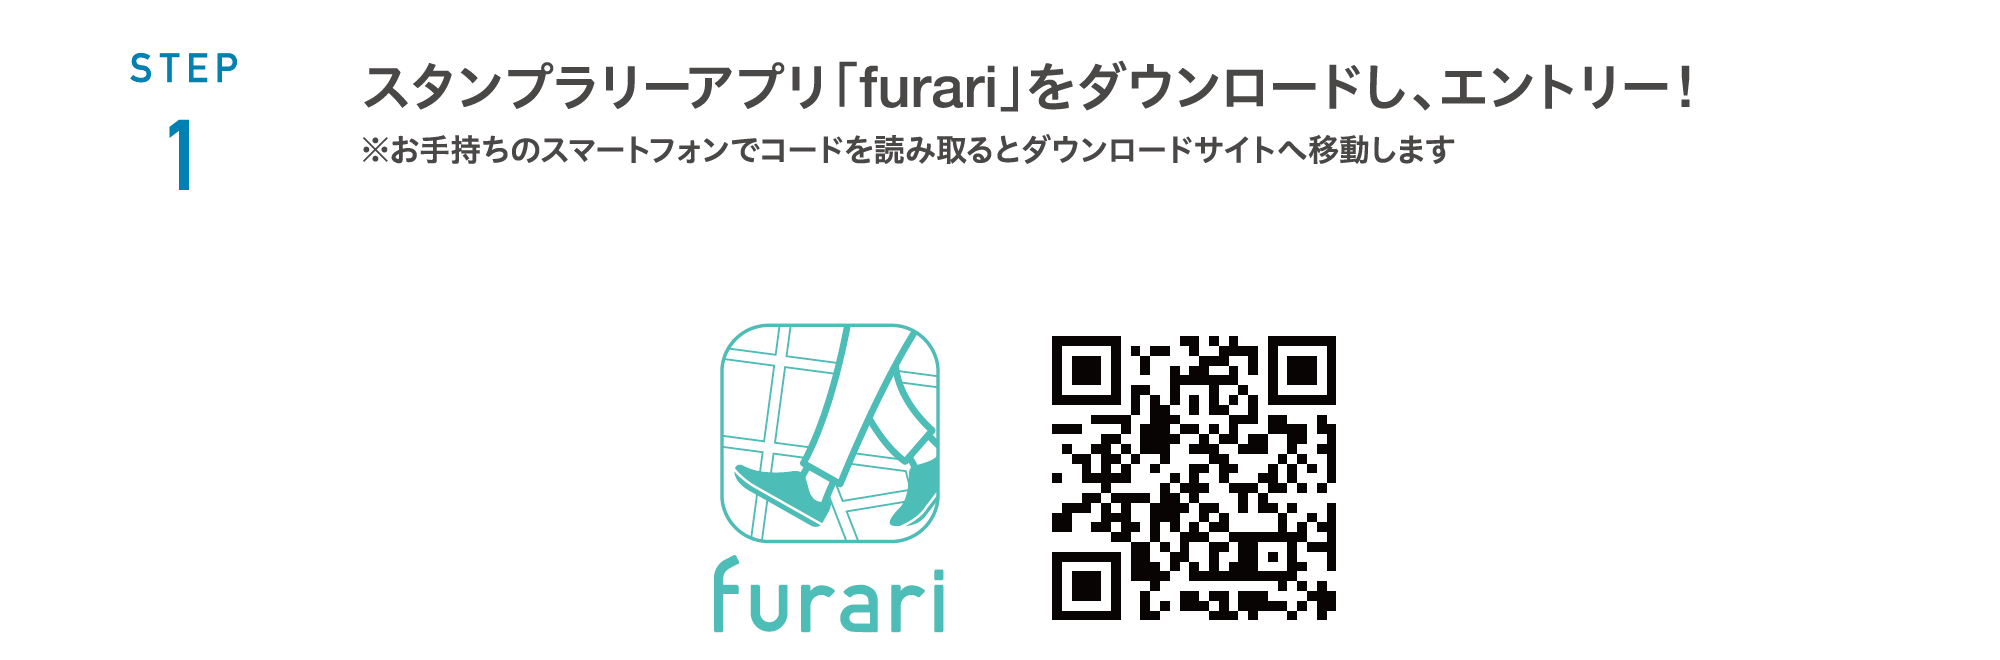 STEP 1 スタンプラリーアプリ「furari」をダウンロードし、エントリー!